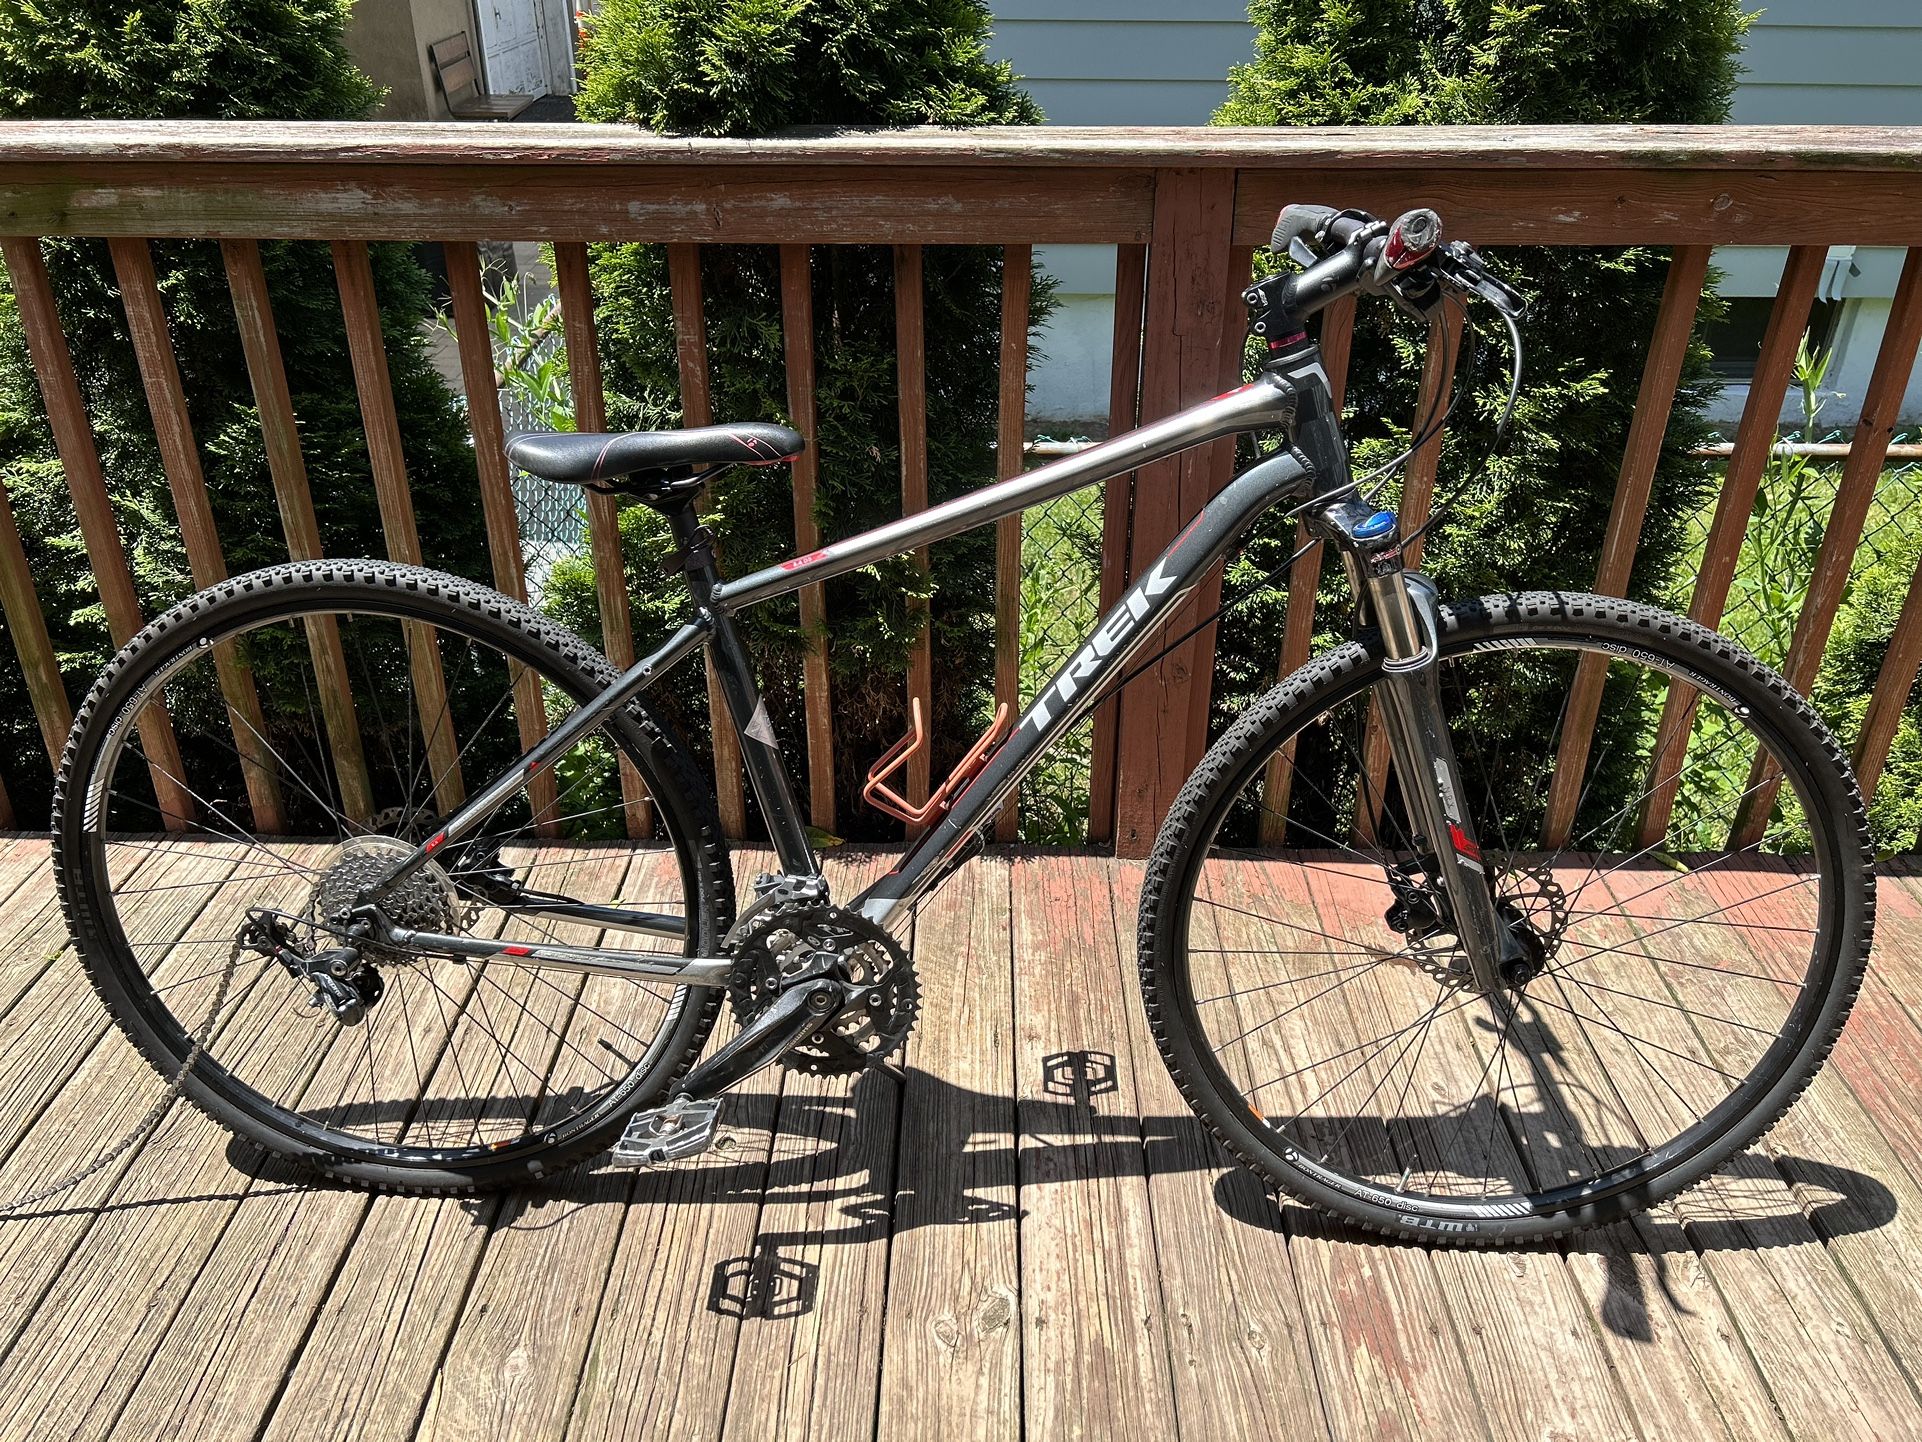  (USED) TREK Mountain Bike (Adult Medium)